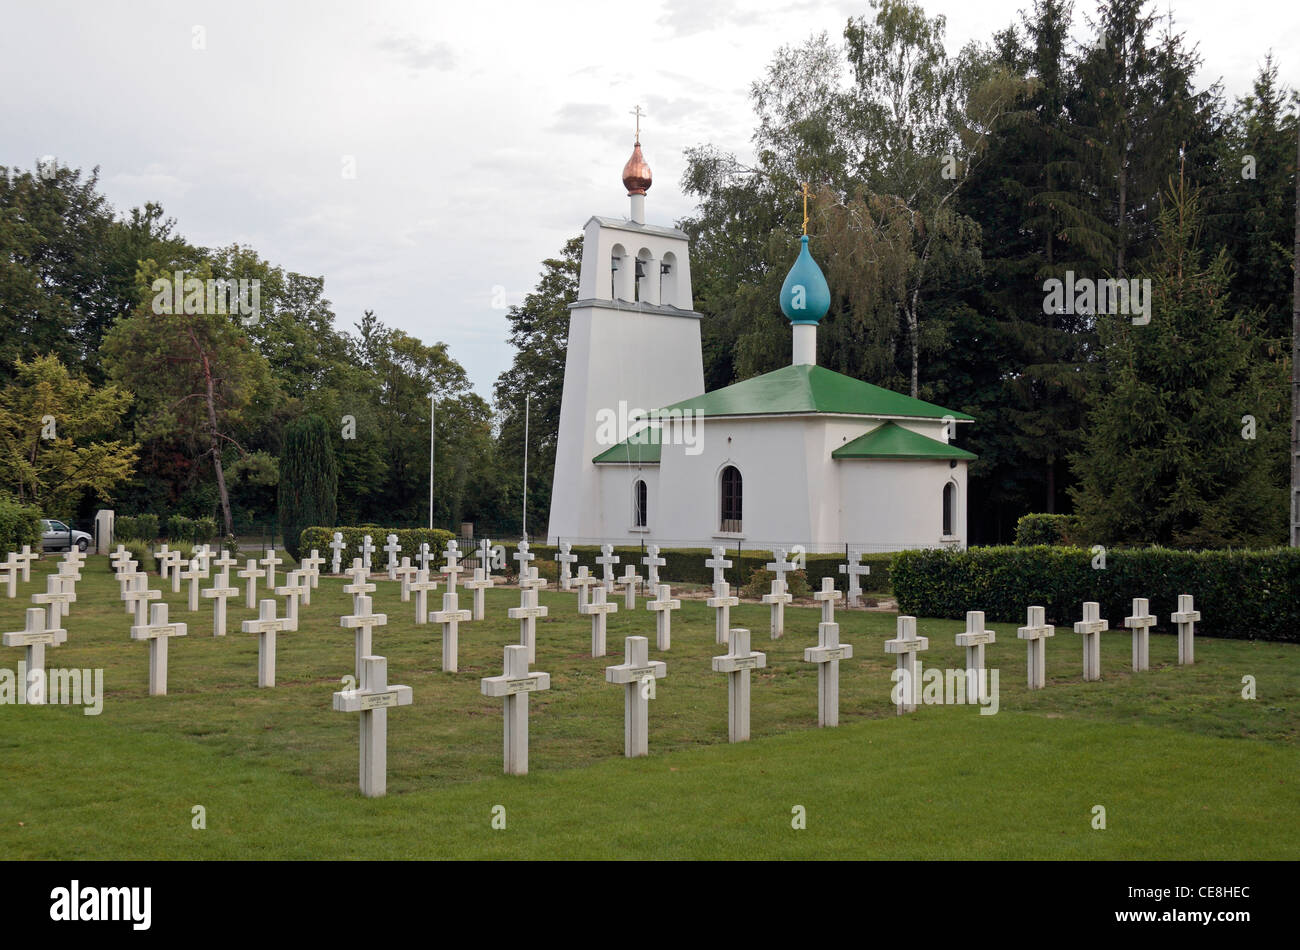 L'étonnante église orthodoxe russe et l'Saint-Hilaire Le grand cimetière militaire russe, près de Reims, Marne, France. Banque D'Images